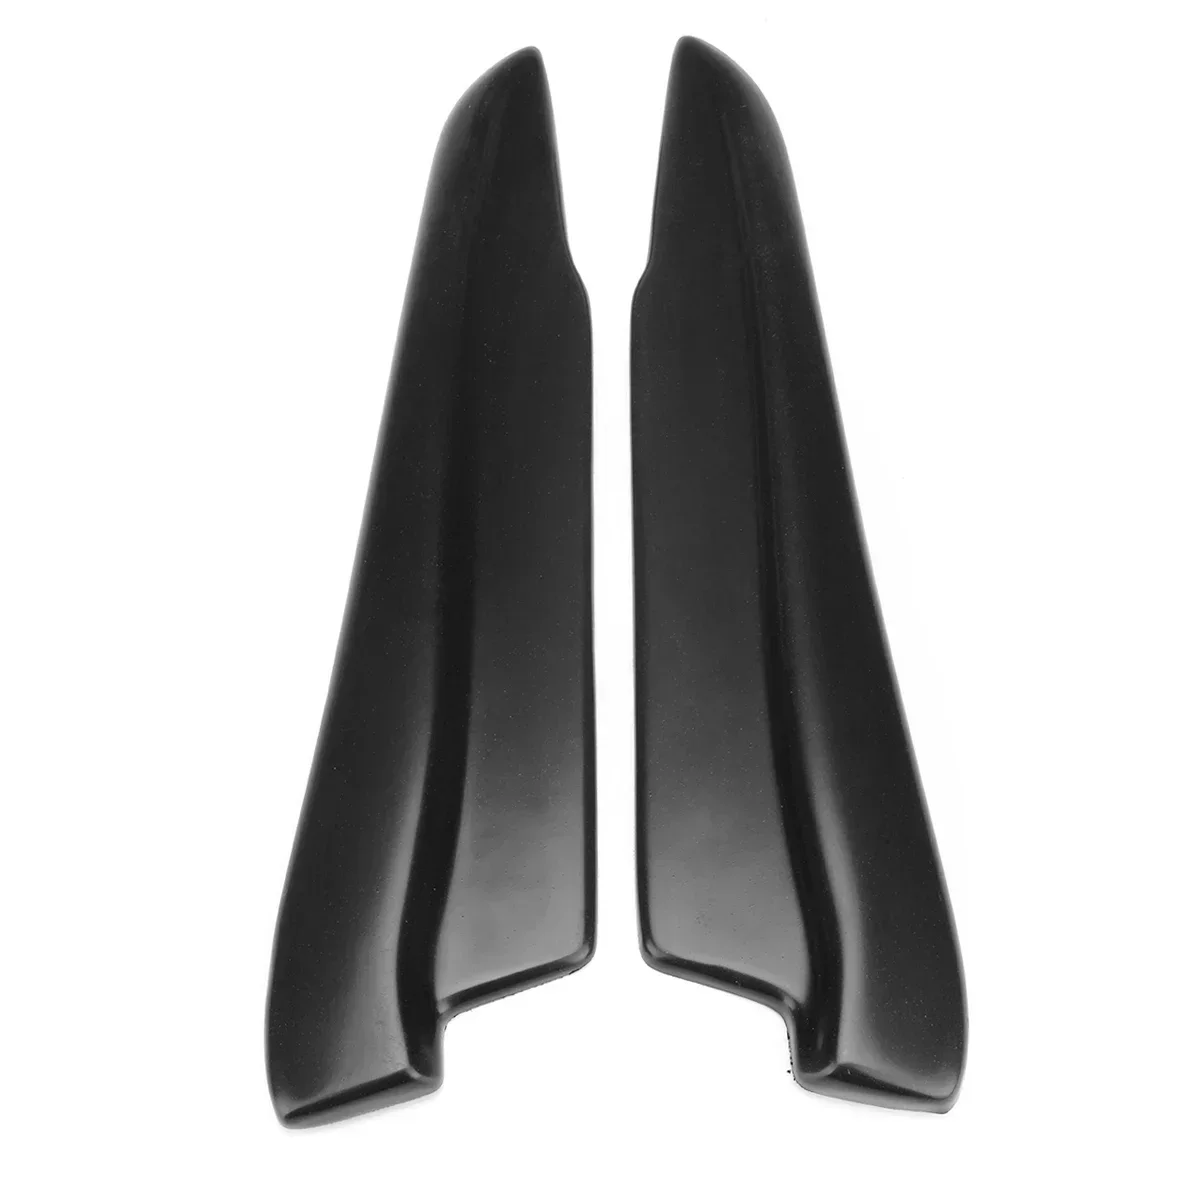 2x 42cm Universal Car Rear Bumper Lip Diffuser Splash Guard Extend Valance Lip For BMW E90 E91 E91 E92 E93 All Style Body Kit